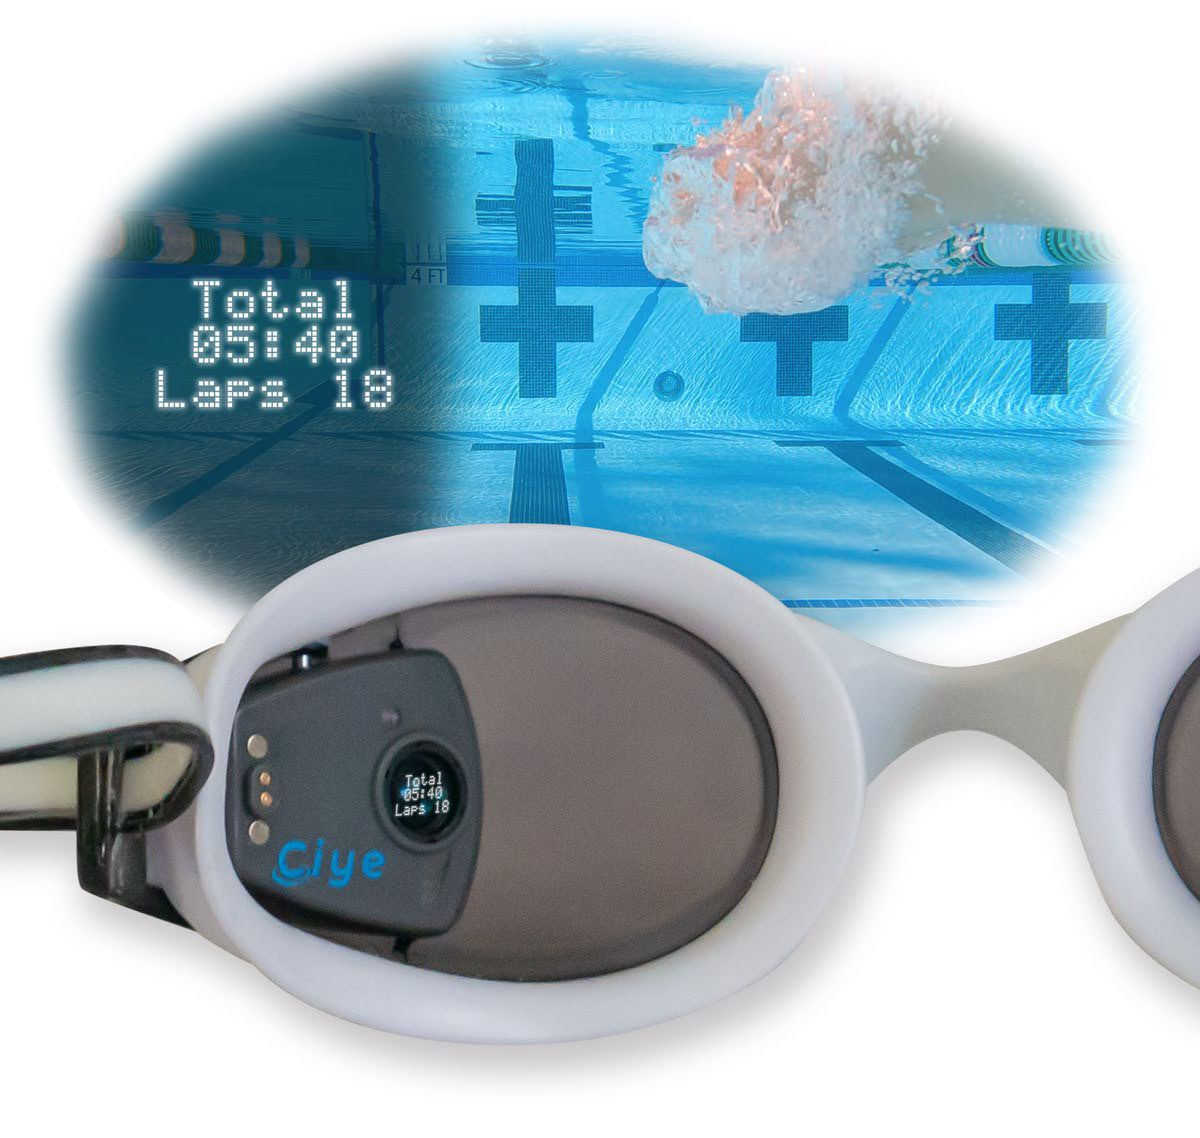 智能护目镜的左镜头特写，显示小Ciye模块。一个覆盖层显示了游泳者在戴上护目镜时会看到什么，游泳者的圈显示在游泳者的左侧视图中。